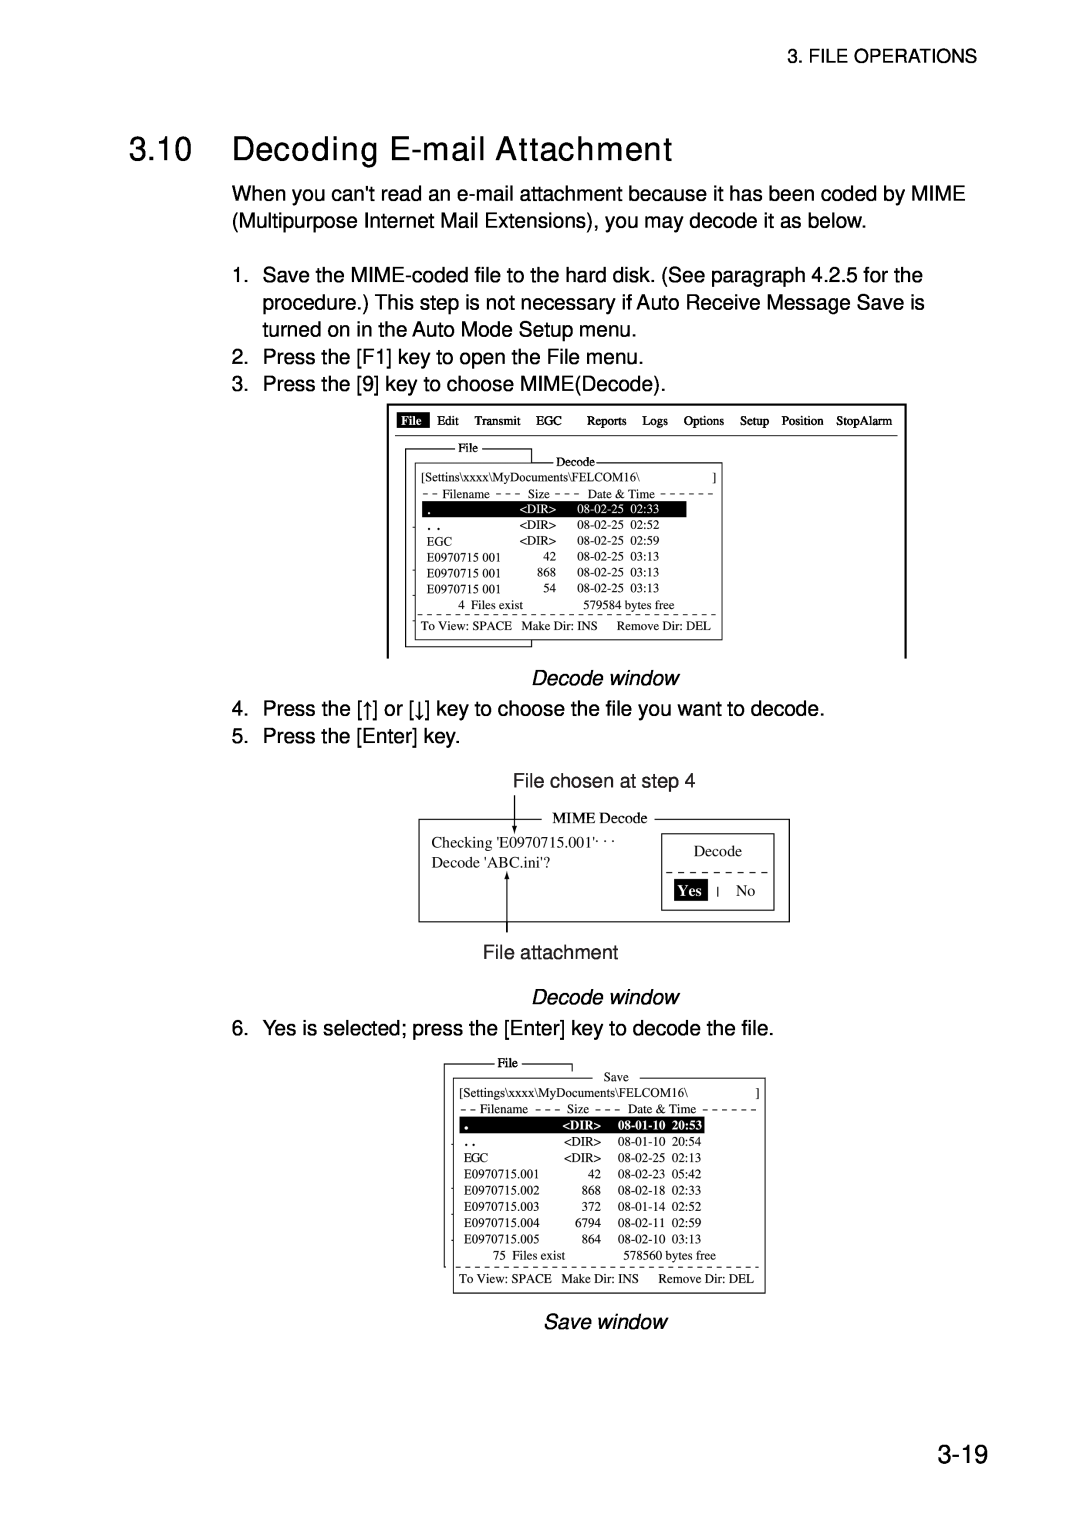 Furuno 16 manual Decoding E-mail Attachment, 3-19, File chosen at step, File attachment 